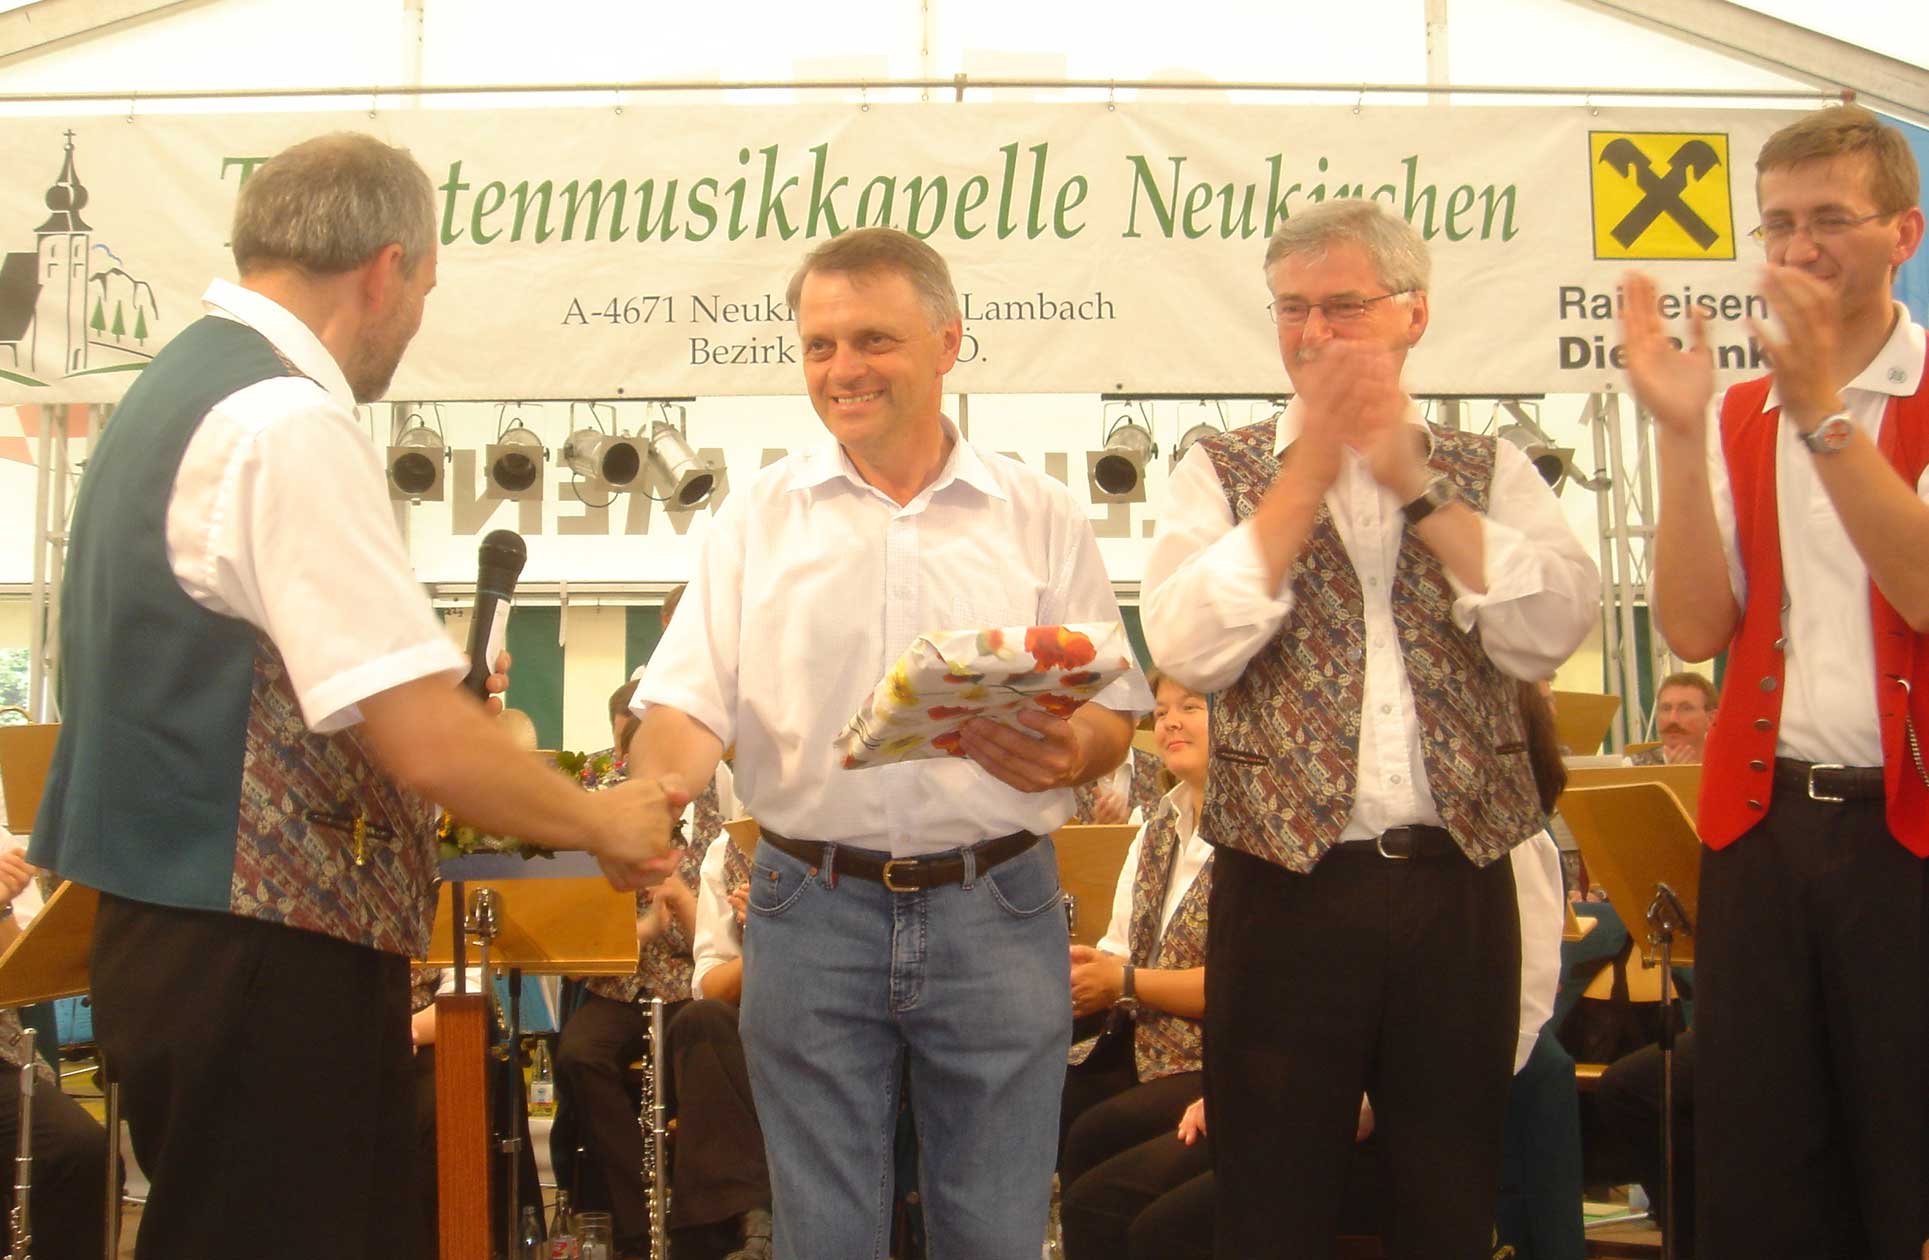 Besuch anlässlich 115 Jahre TMK Neukirchen - Frühschoppen